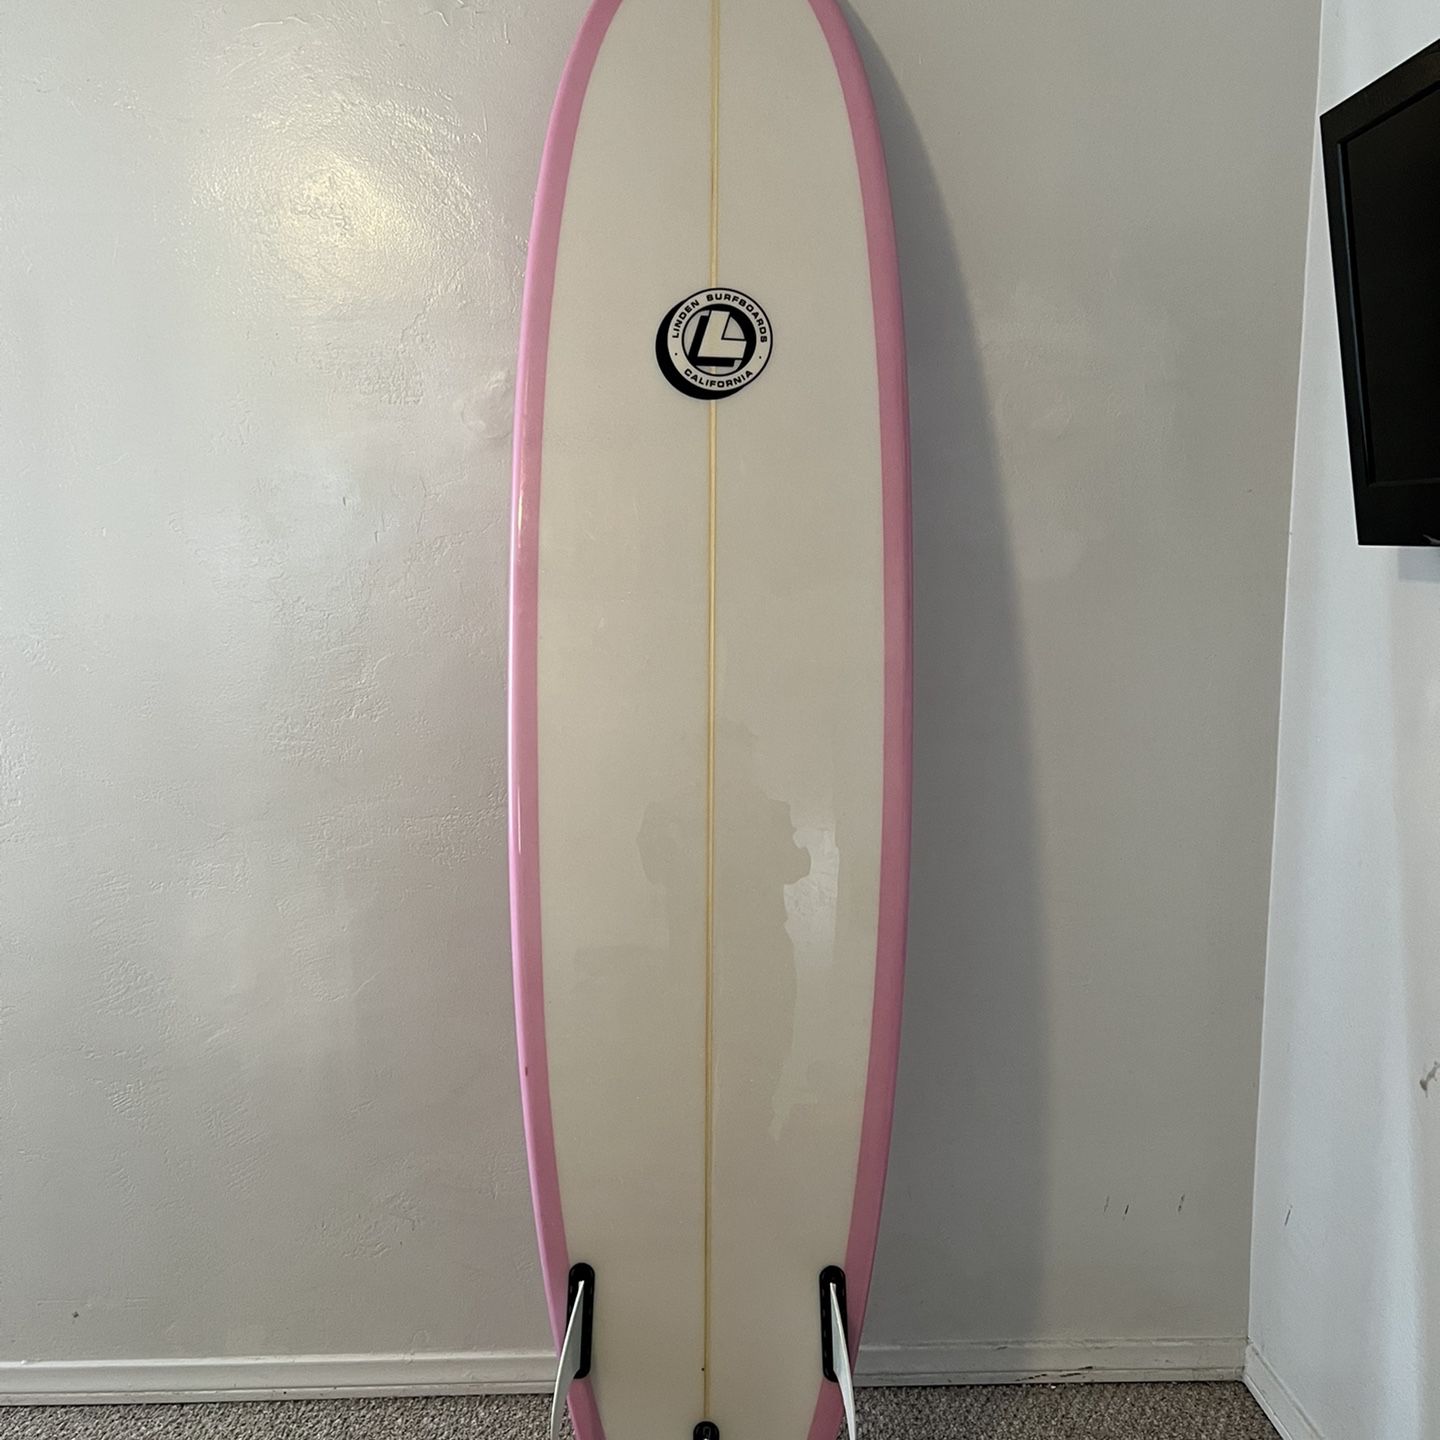 7’6” like new surfboard